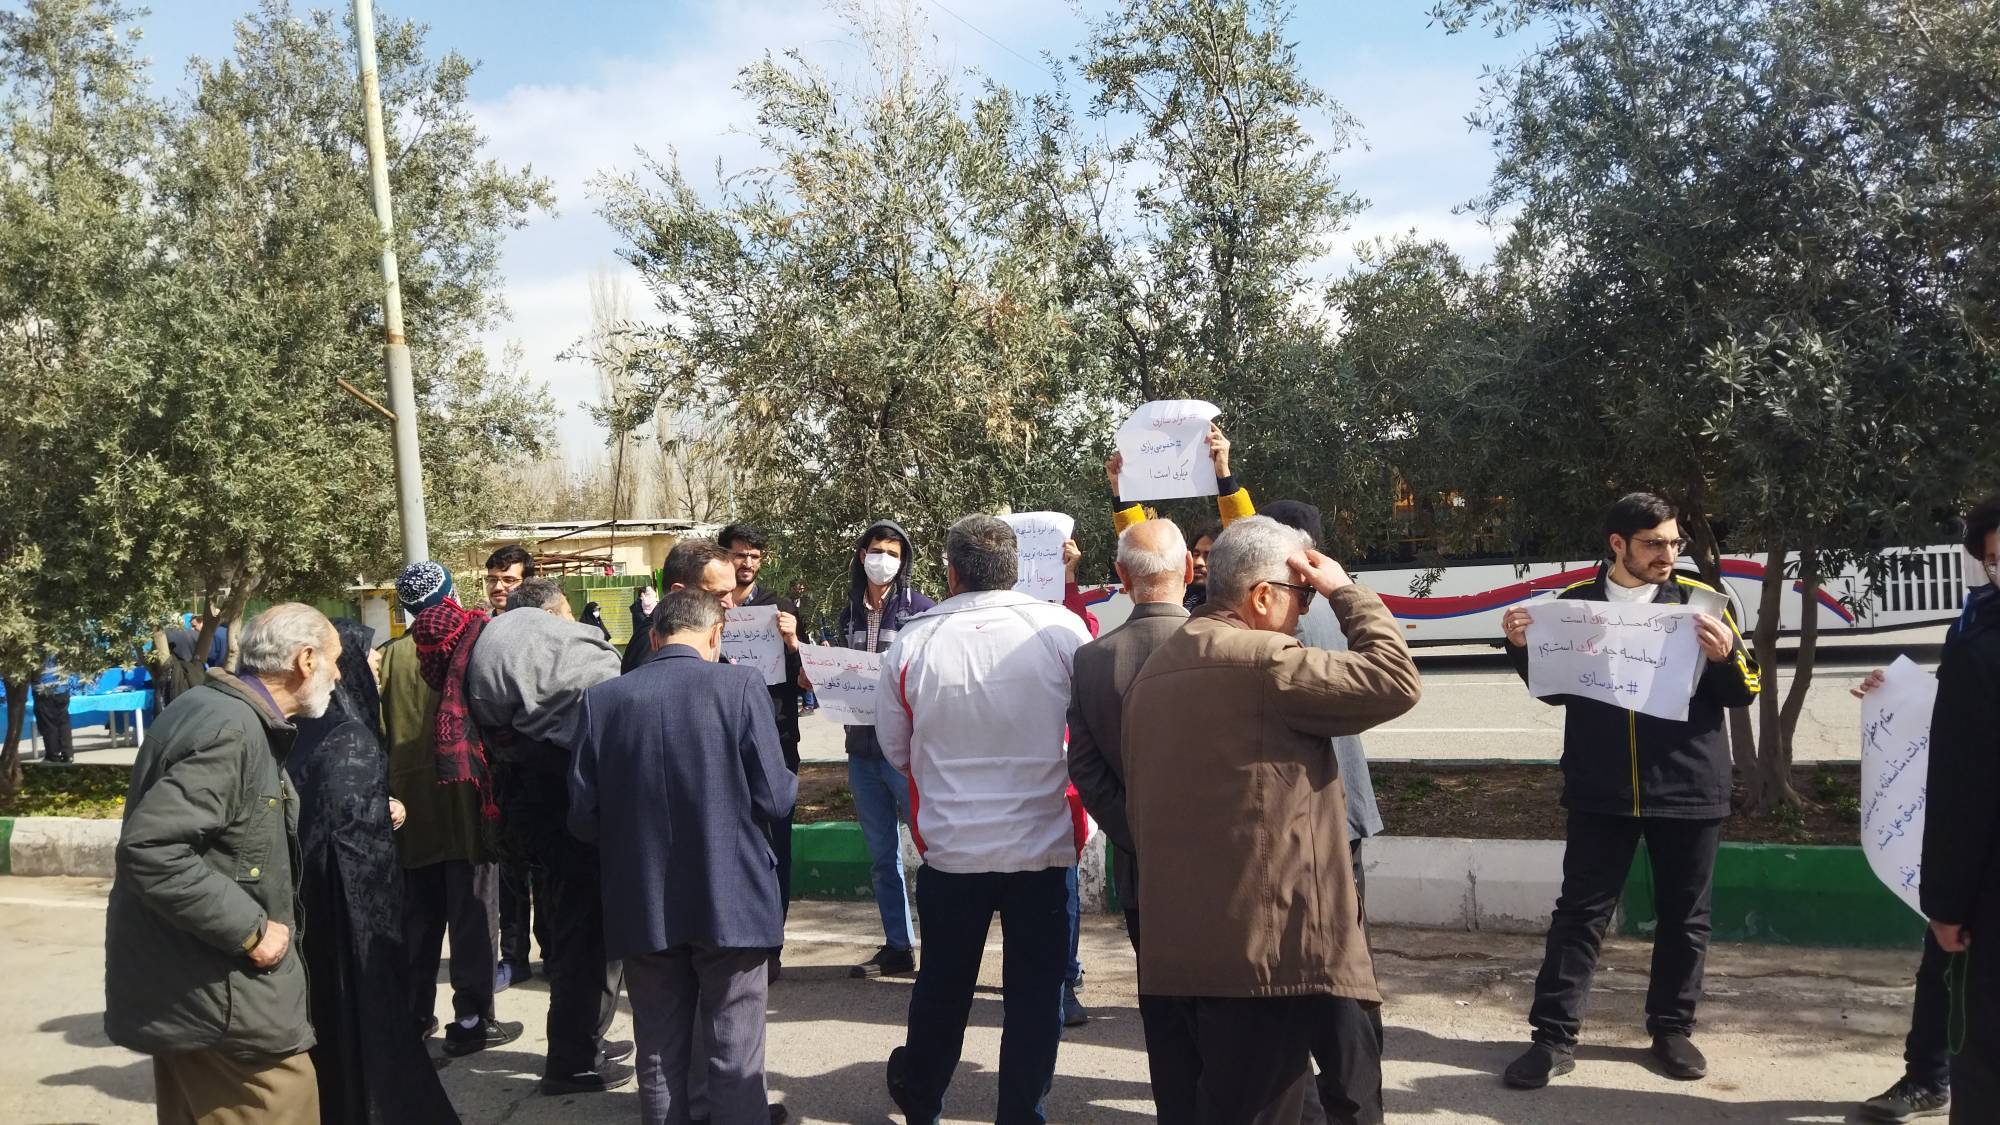 اعتراض دانشجویان بسیجی پردیس فنی و مهندسی شهید عباسپور پیرامون مصوبه مولدسازی